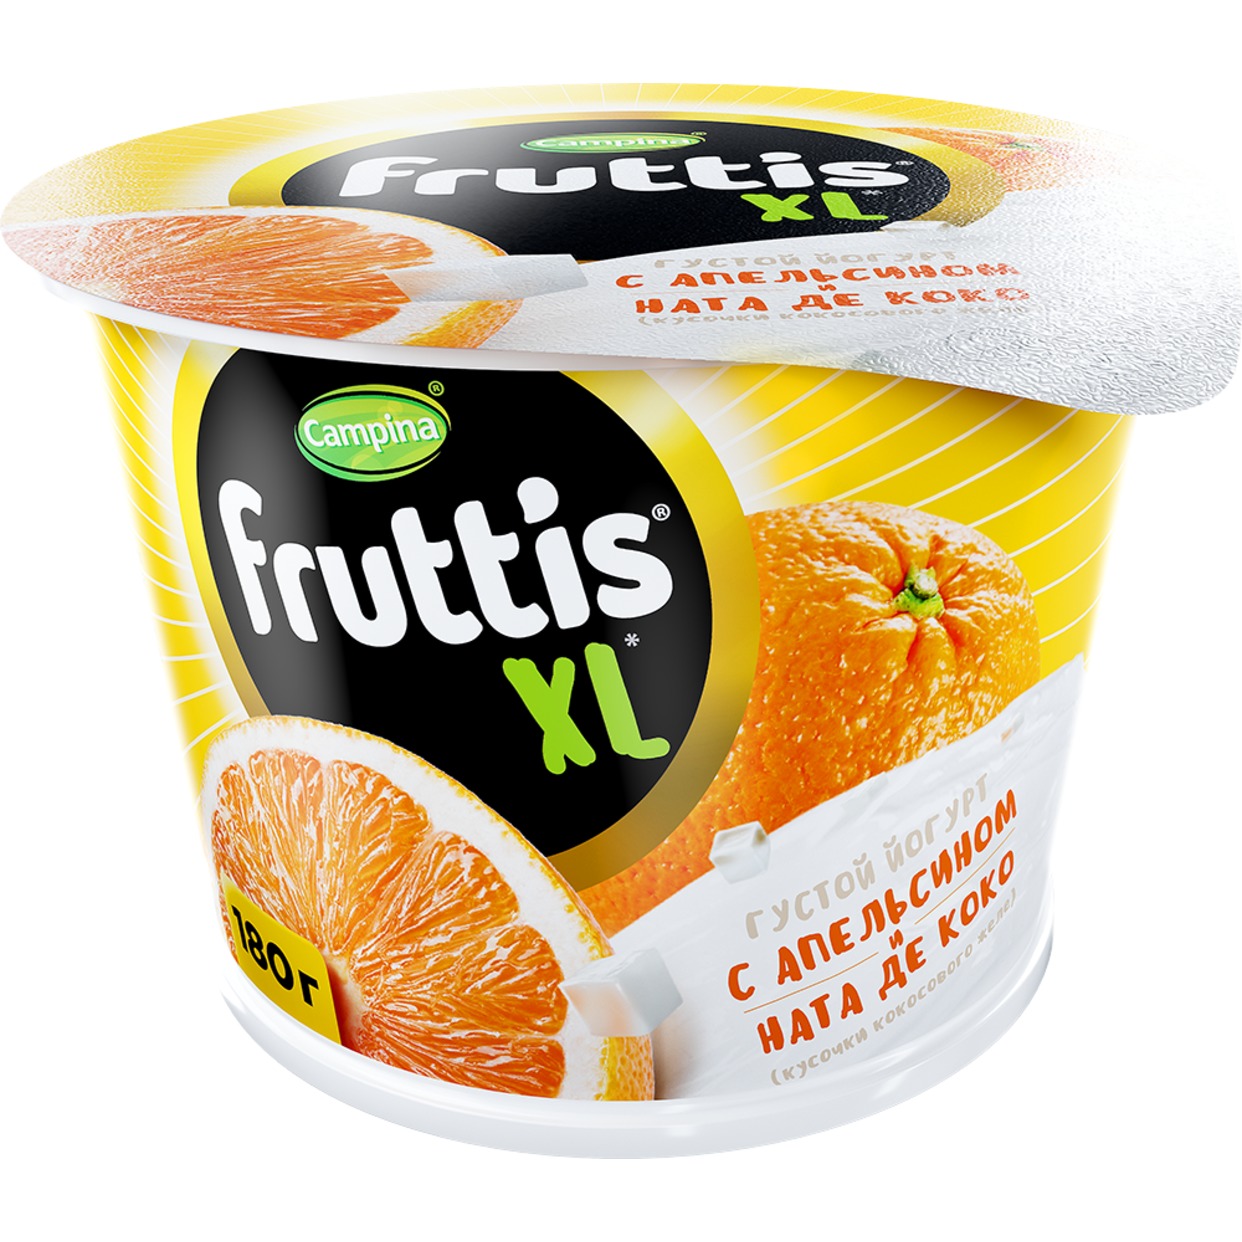 БЗМЖ Йогурт Fruttis XL c апельсином и кусочками кокосового желе ната де коко 4,3% 180г по акции в Пятерочке